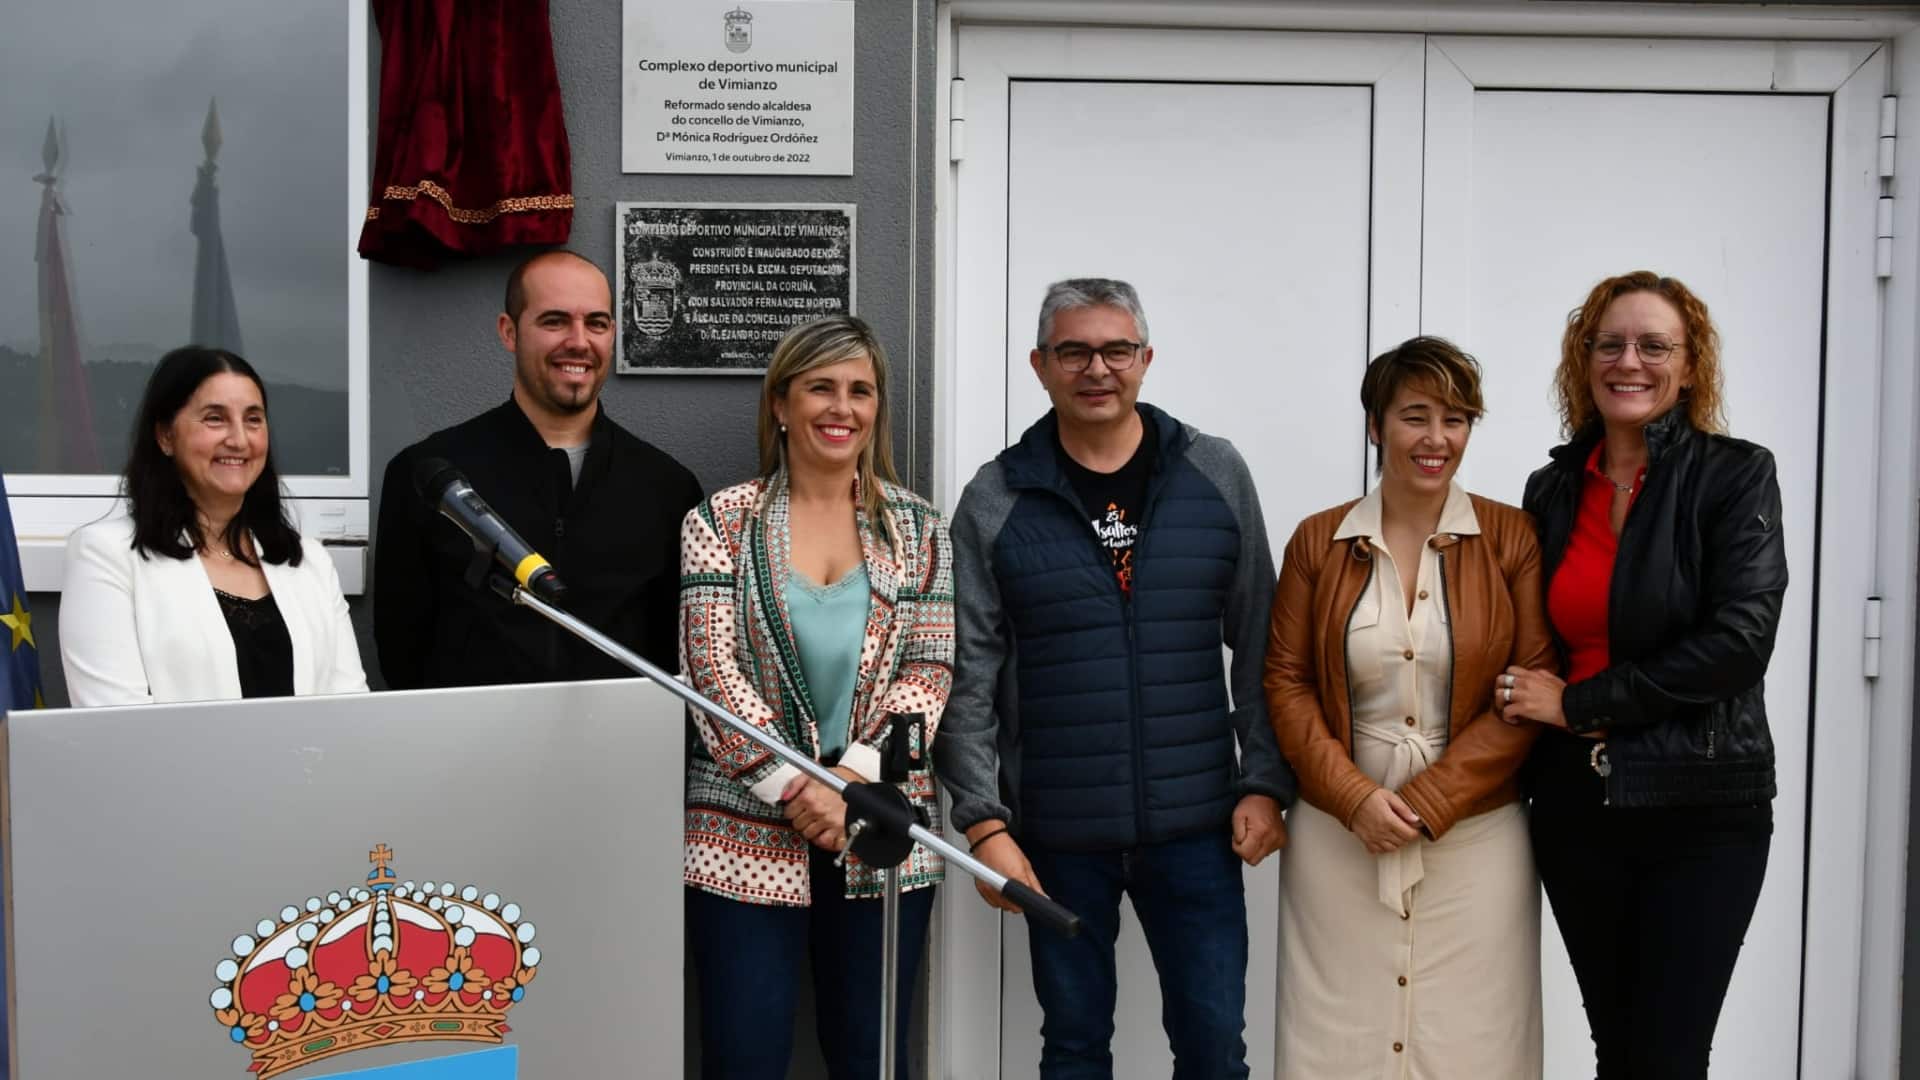 La inauguración del renovado gimnasio municipal de Vimianzo | CONCELLO DE VIMIANZO